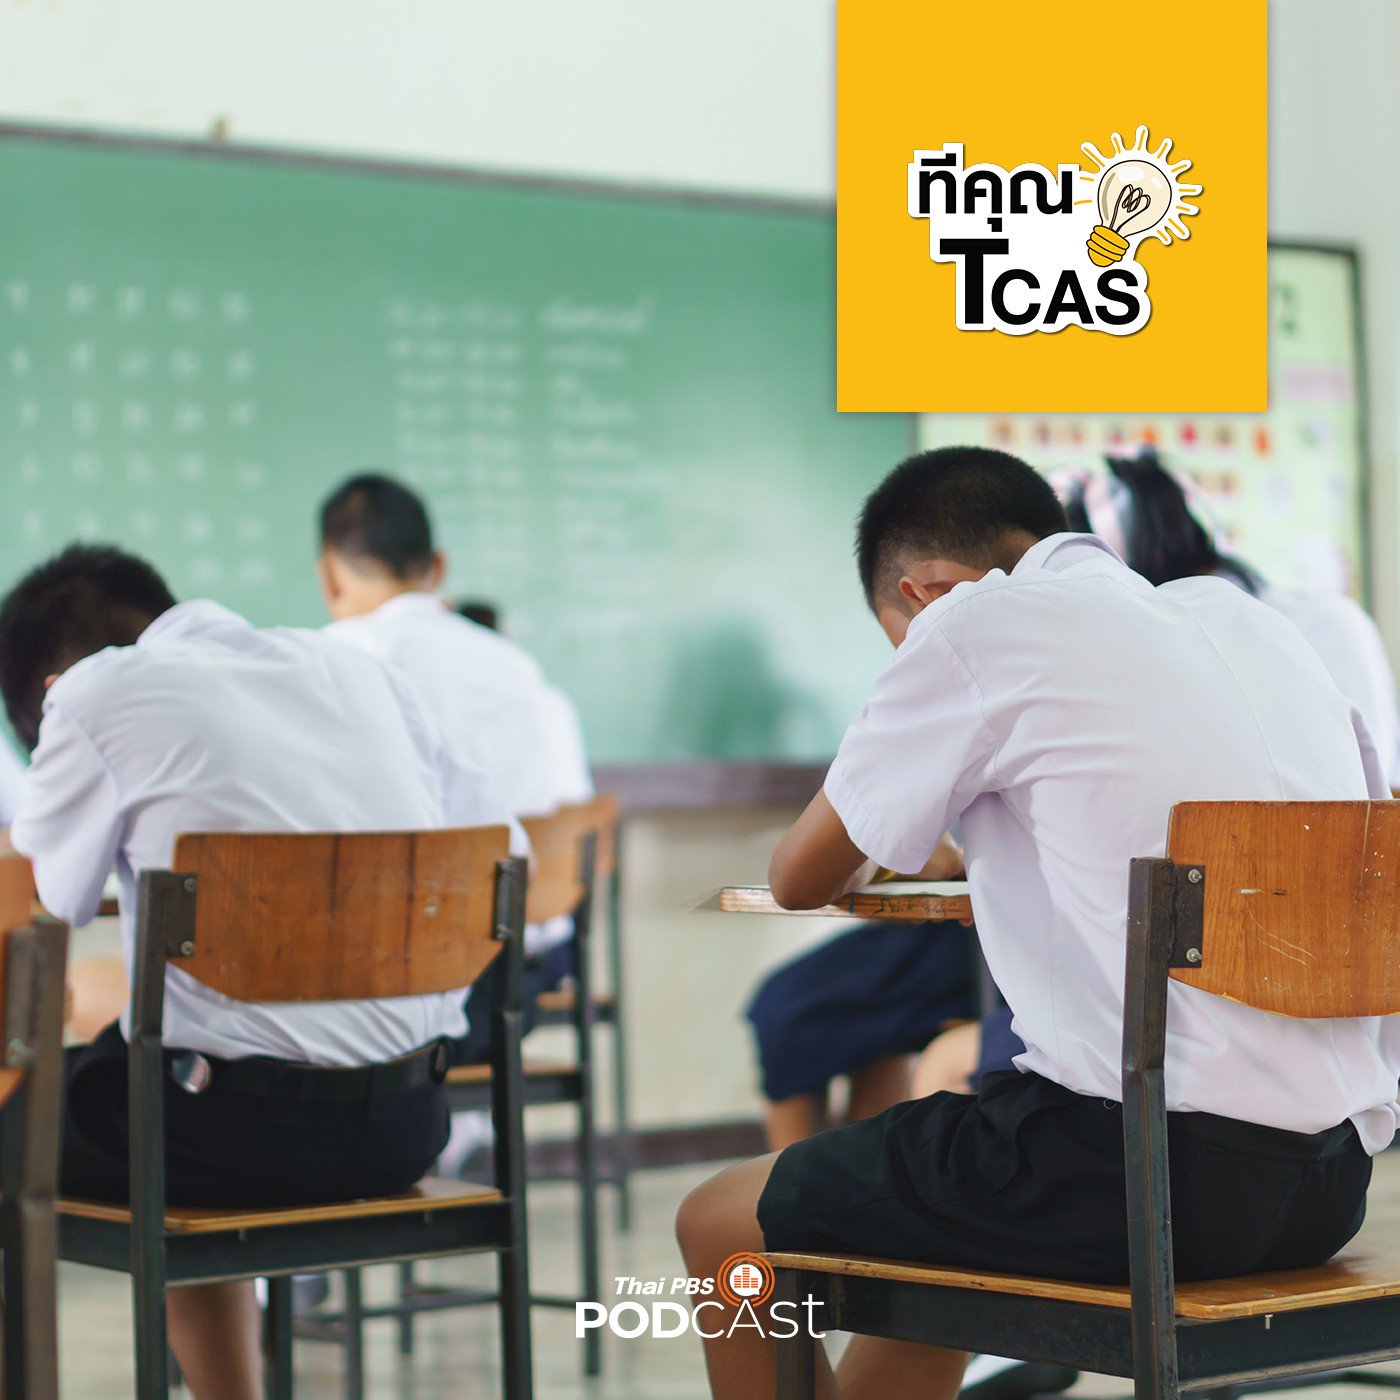 ทีคุณ TCAS EP. 64: เทคนิคการใช้ชีวิตในห้องสอบ